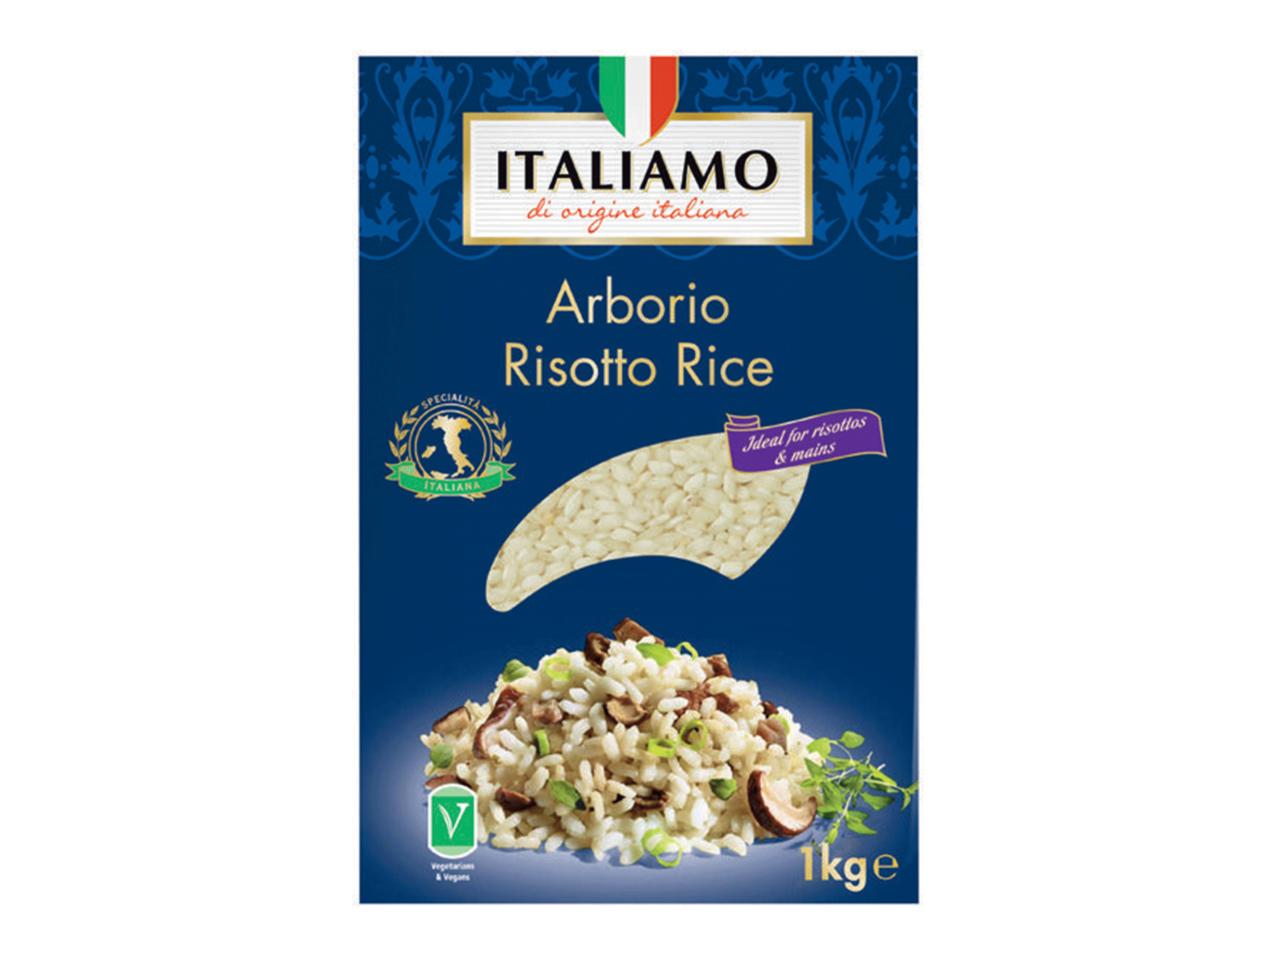 ITALIAMO Arborio Risotto Rice